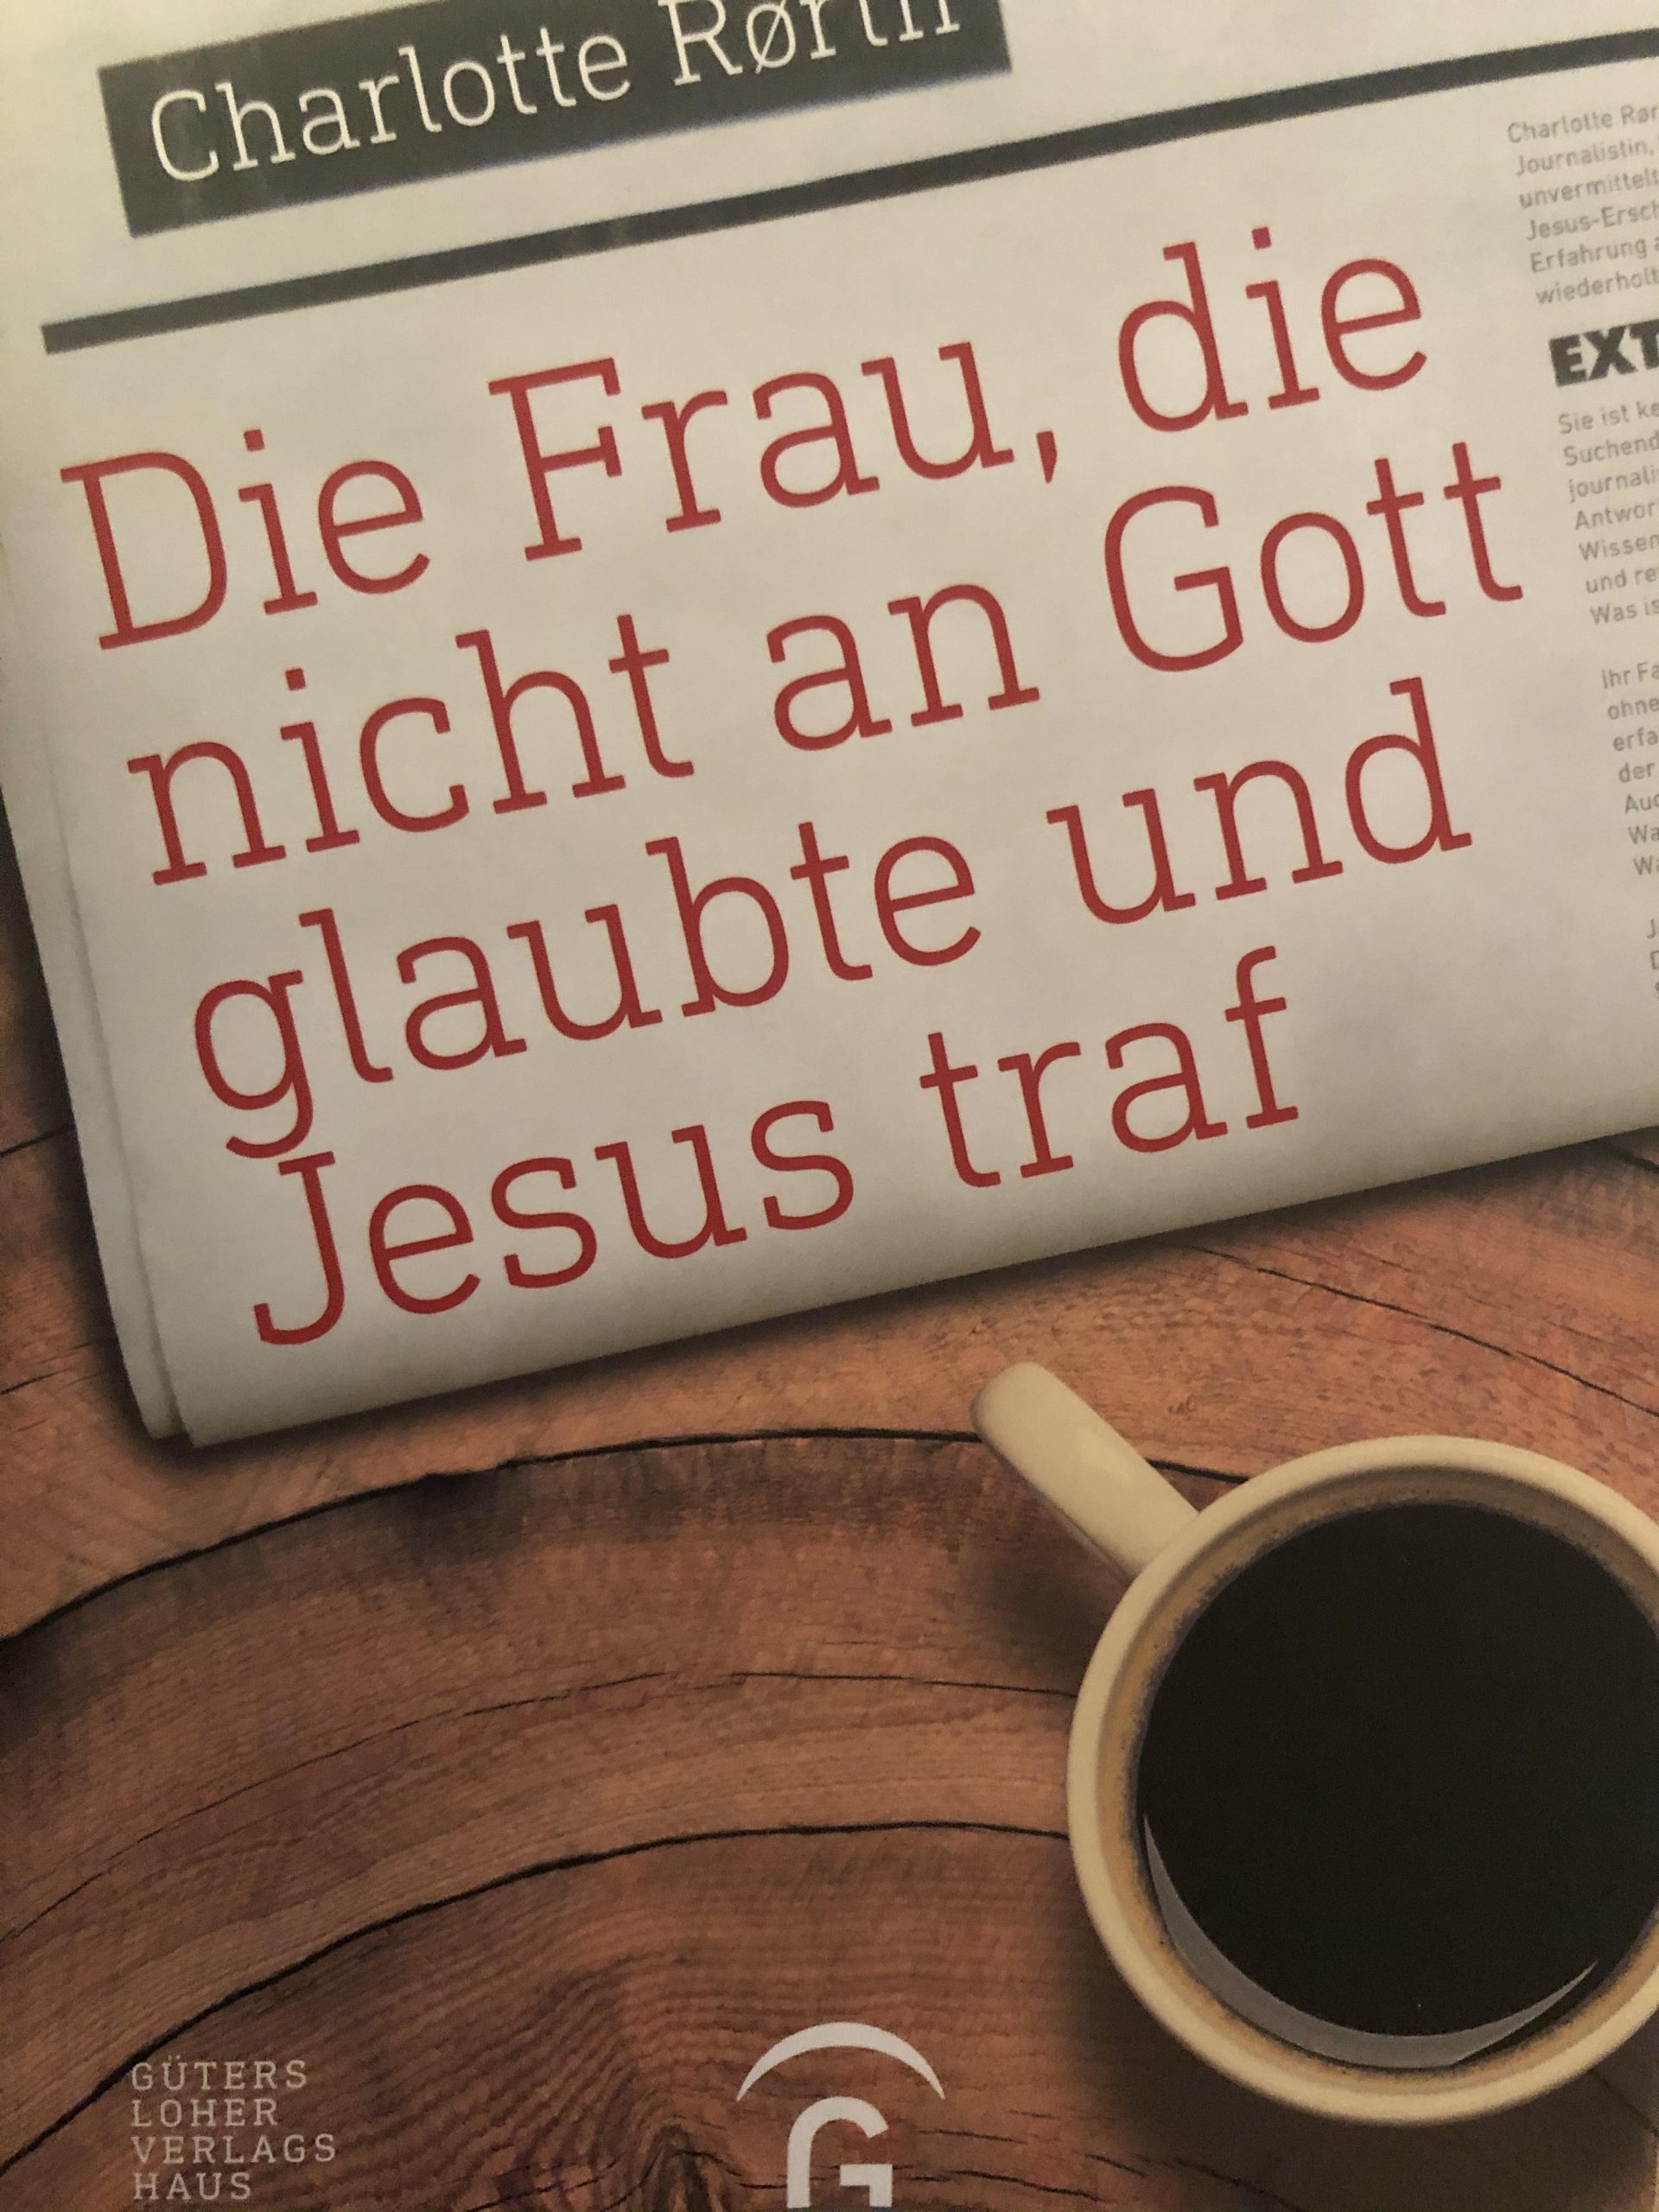 Jeg mødte Jesus tysk